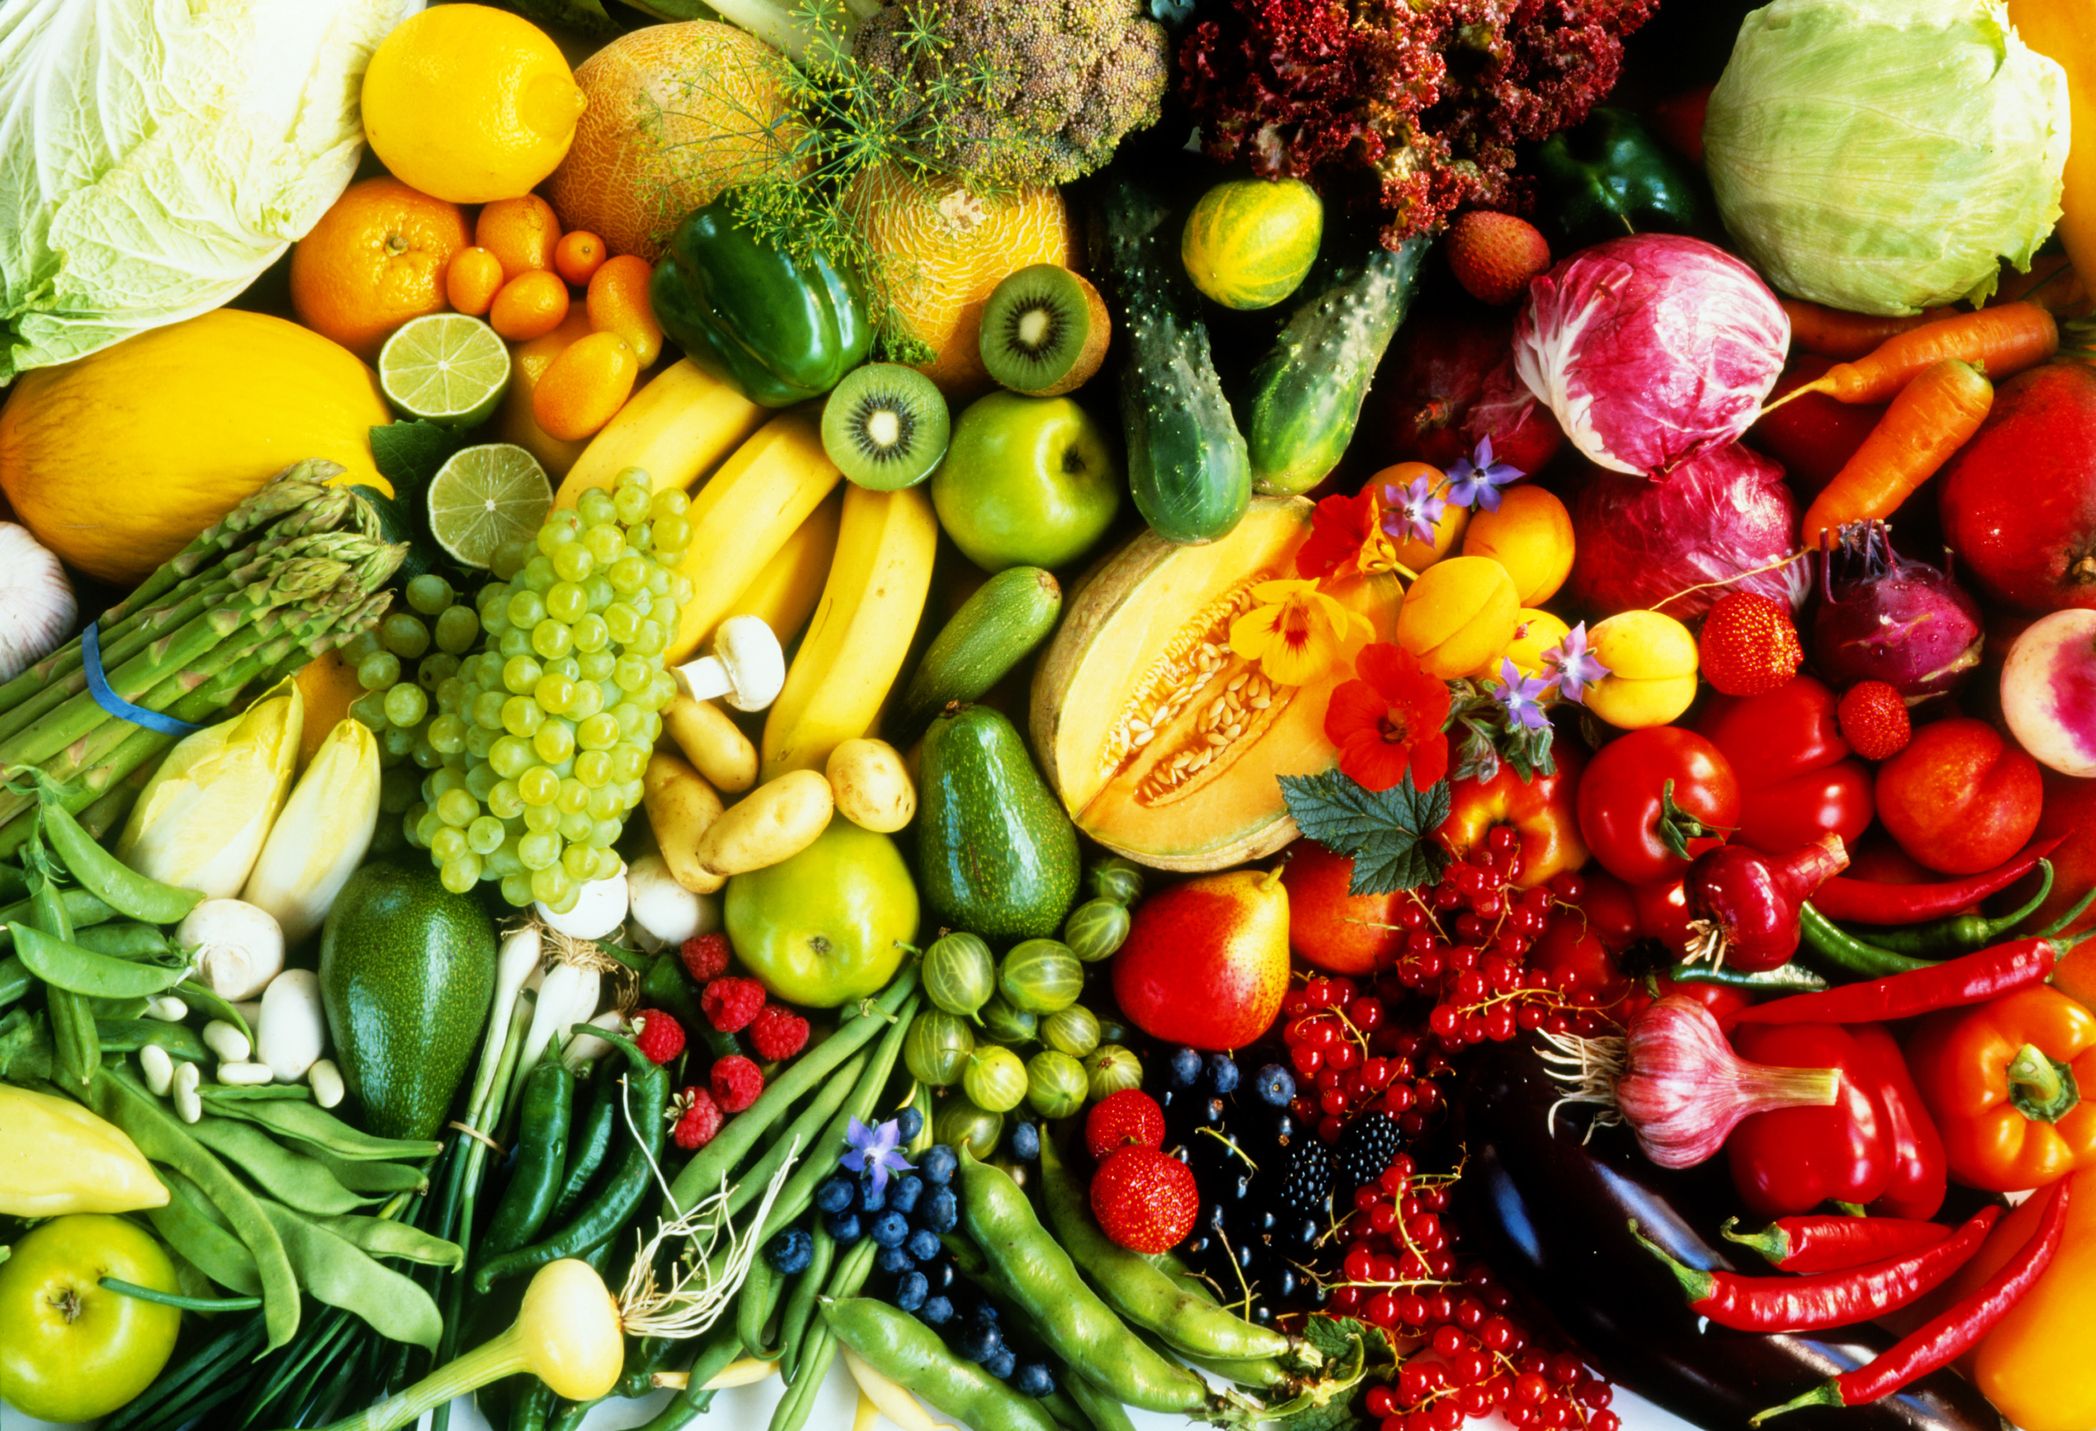 Vegetables Price Today: सब्जियों को लगी महंगाई की नजर, कीमत सुन लोगों का मन हुआ खट्टा